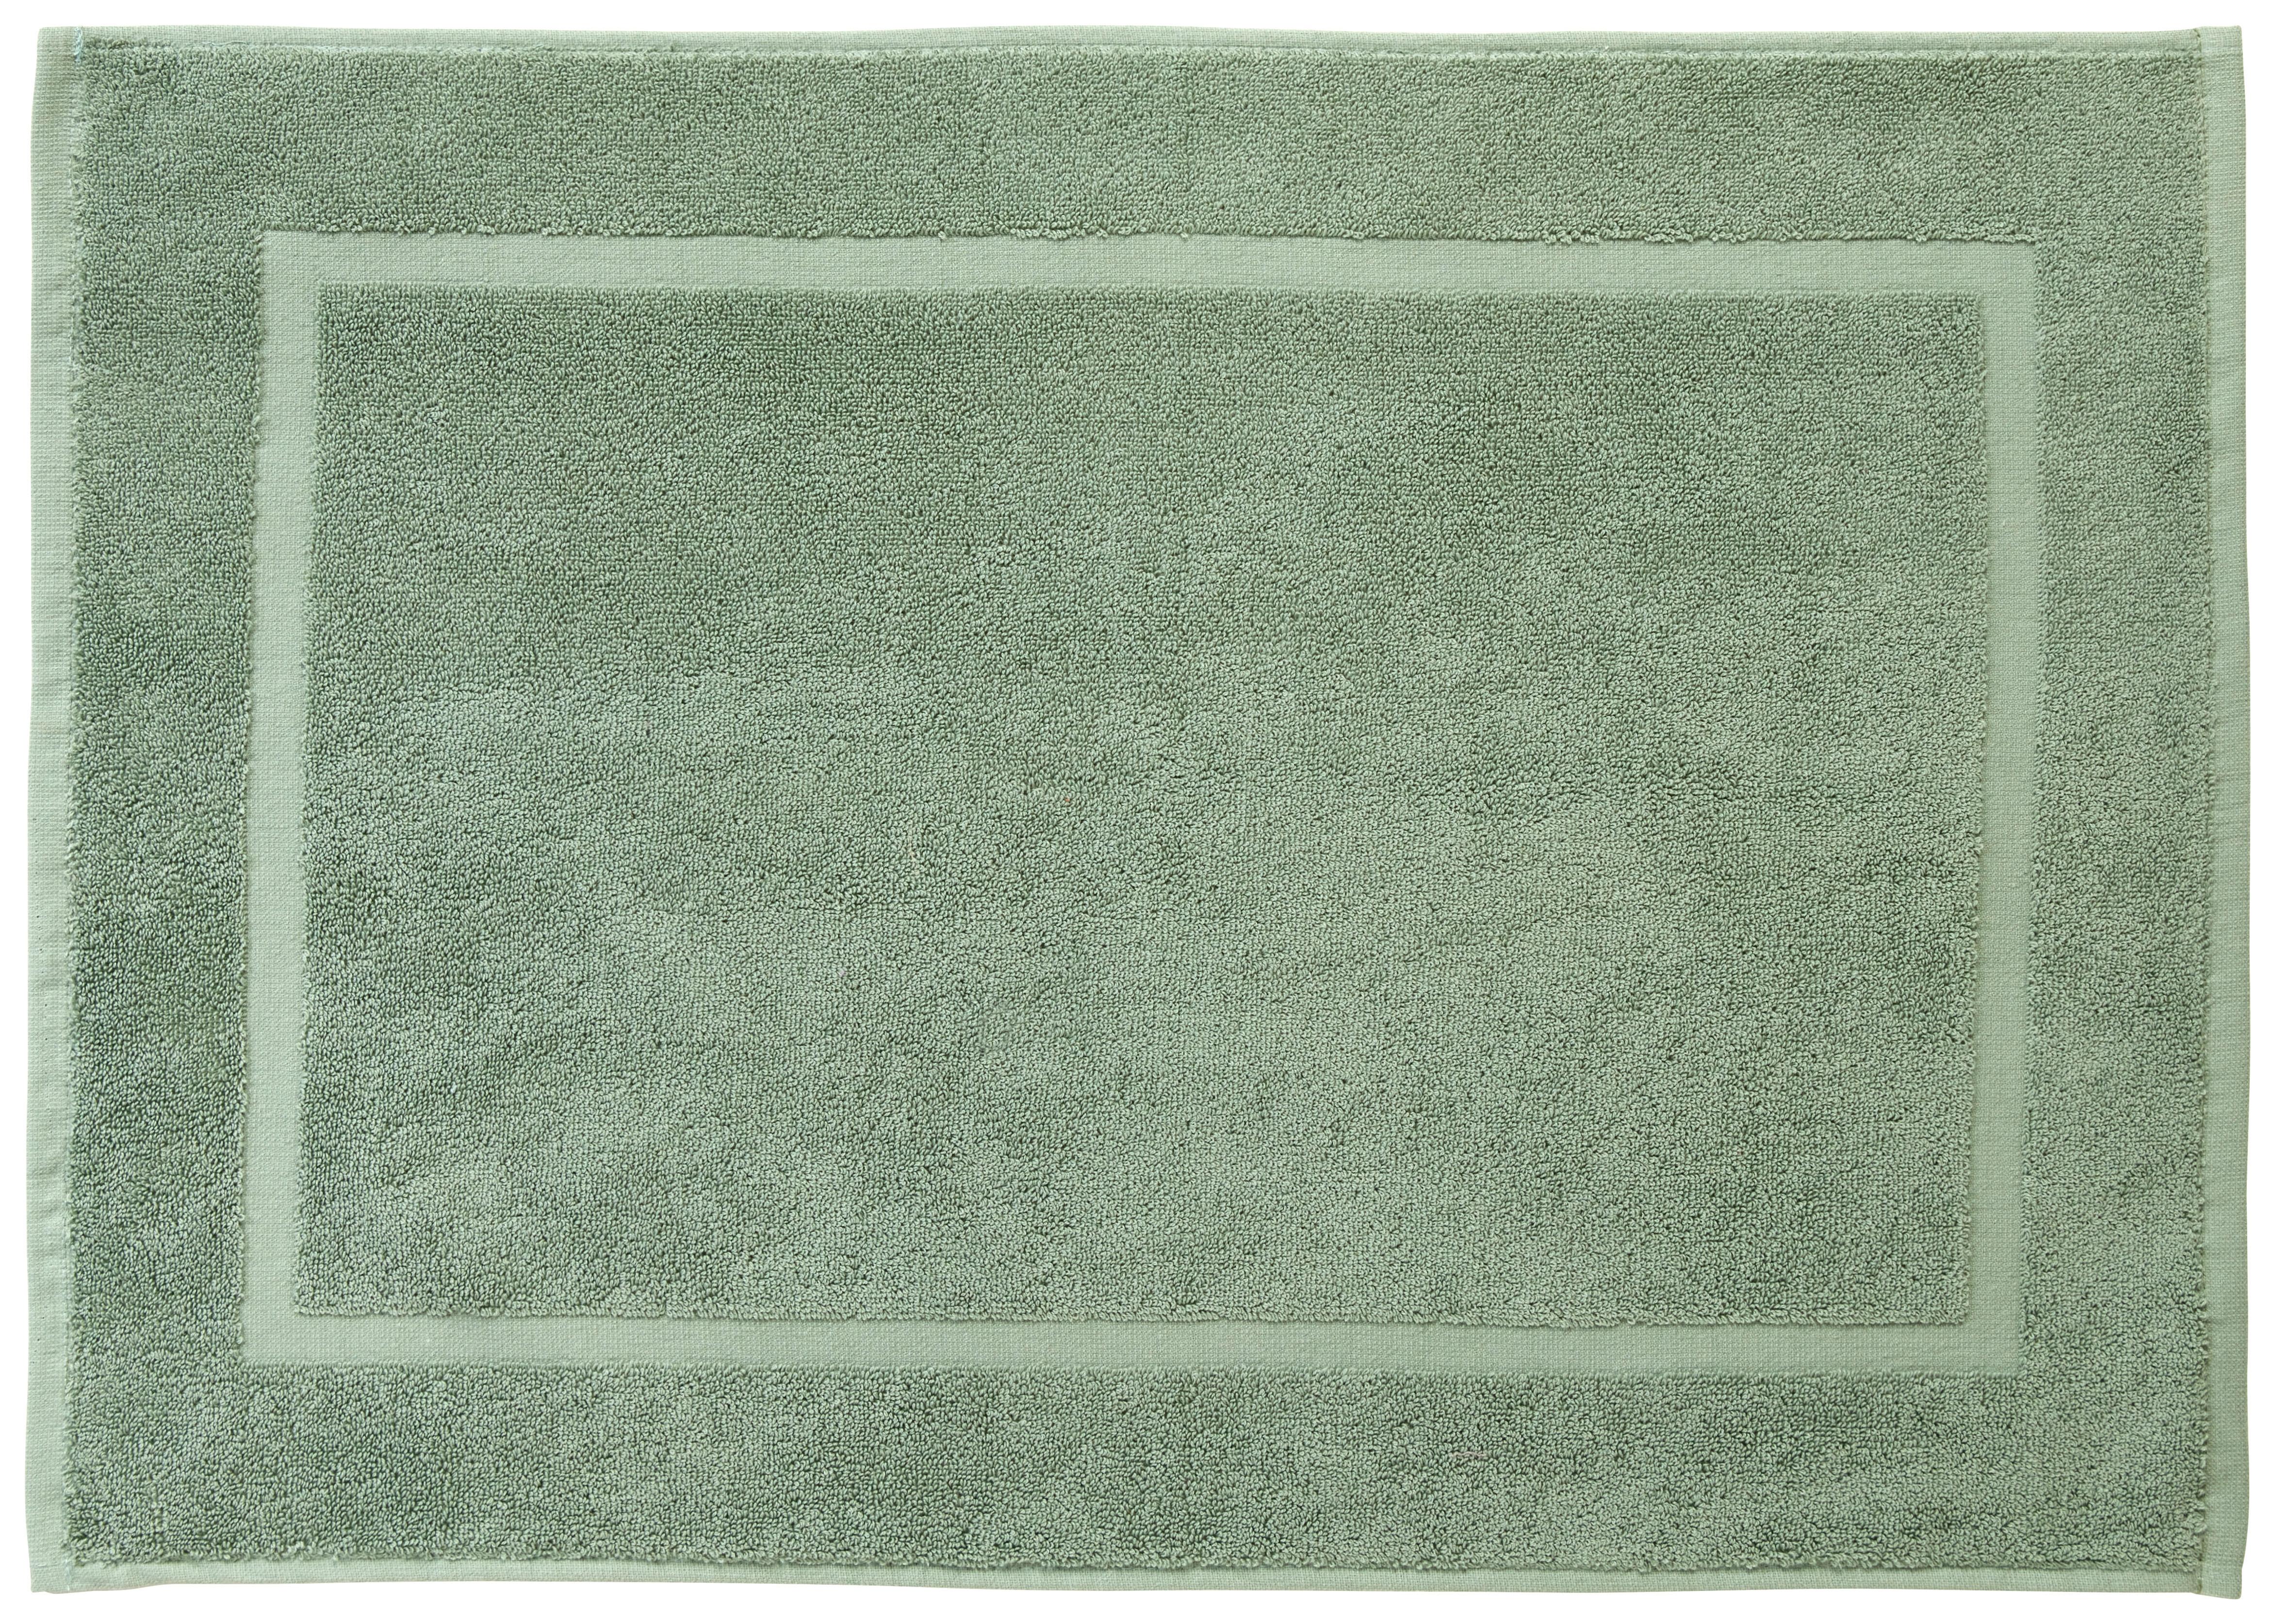 Koupelnová Předložka Melanie, 50/70cm, Zelená - zelená, textil (50/70cm) - Modern Living